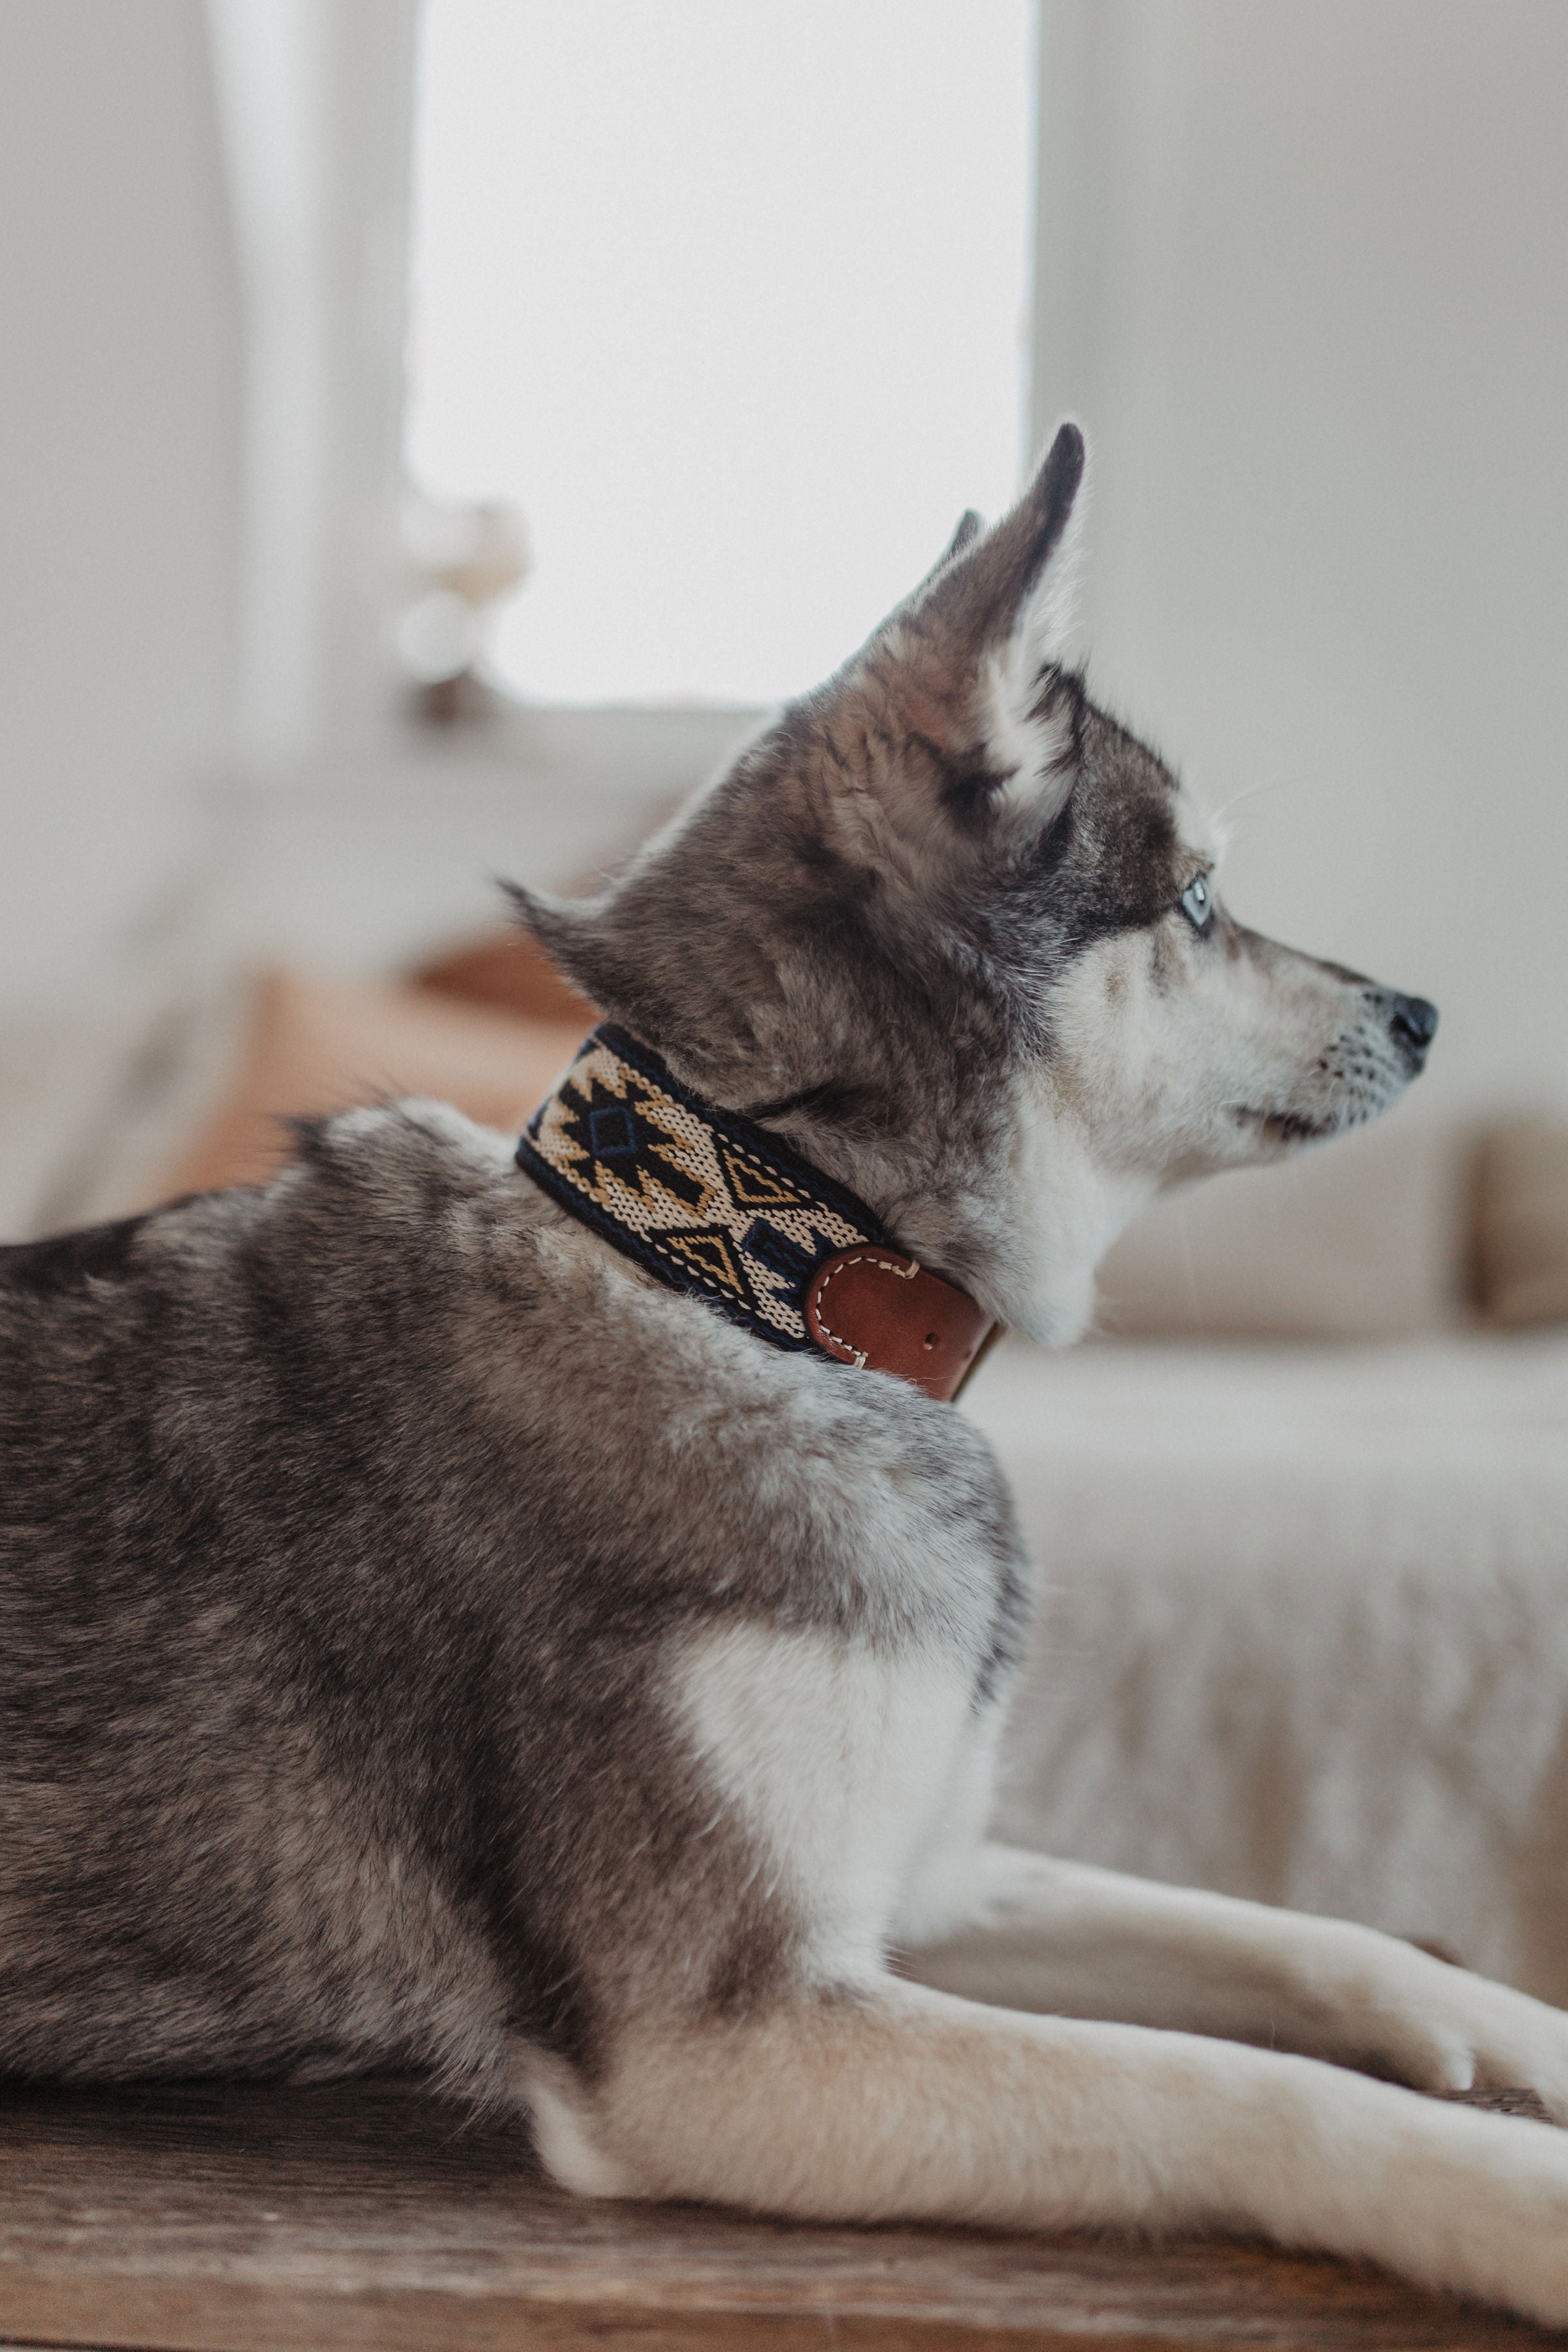 Dog Collar: Peyote Azul